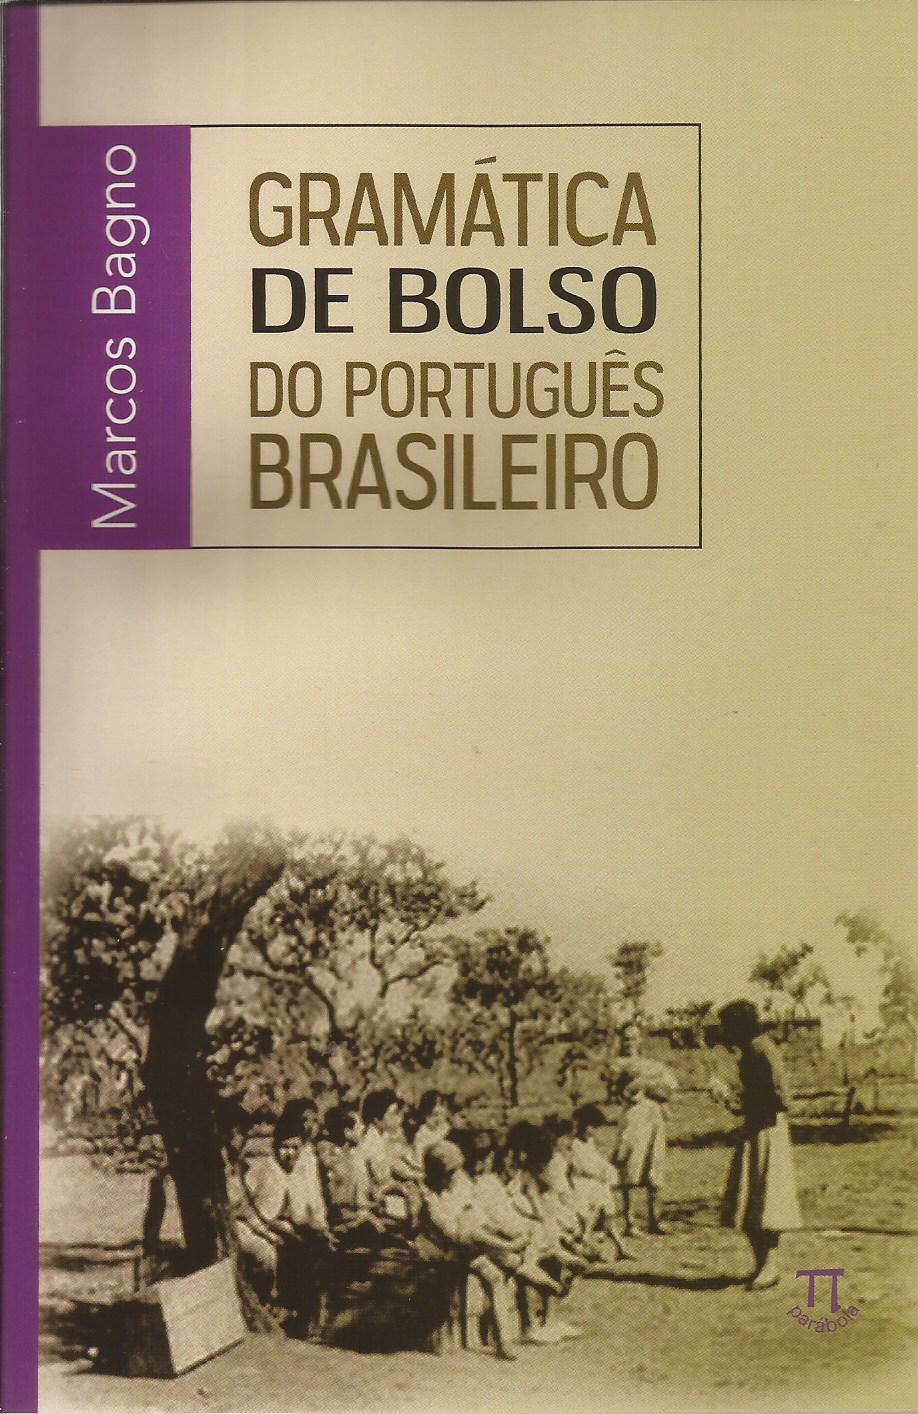 Gramática de bolso do português brasileiro